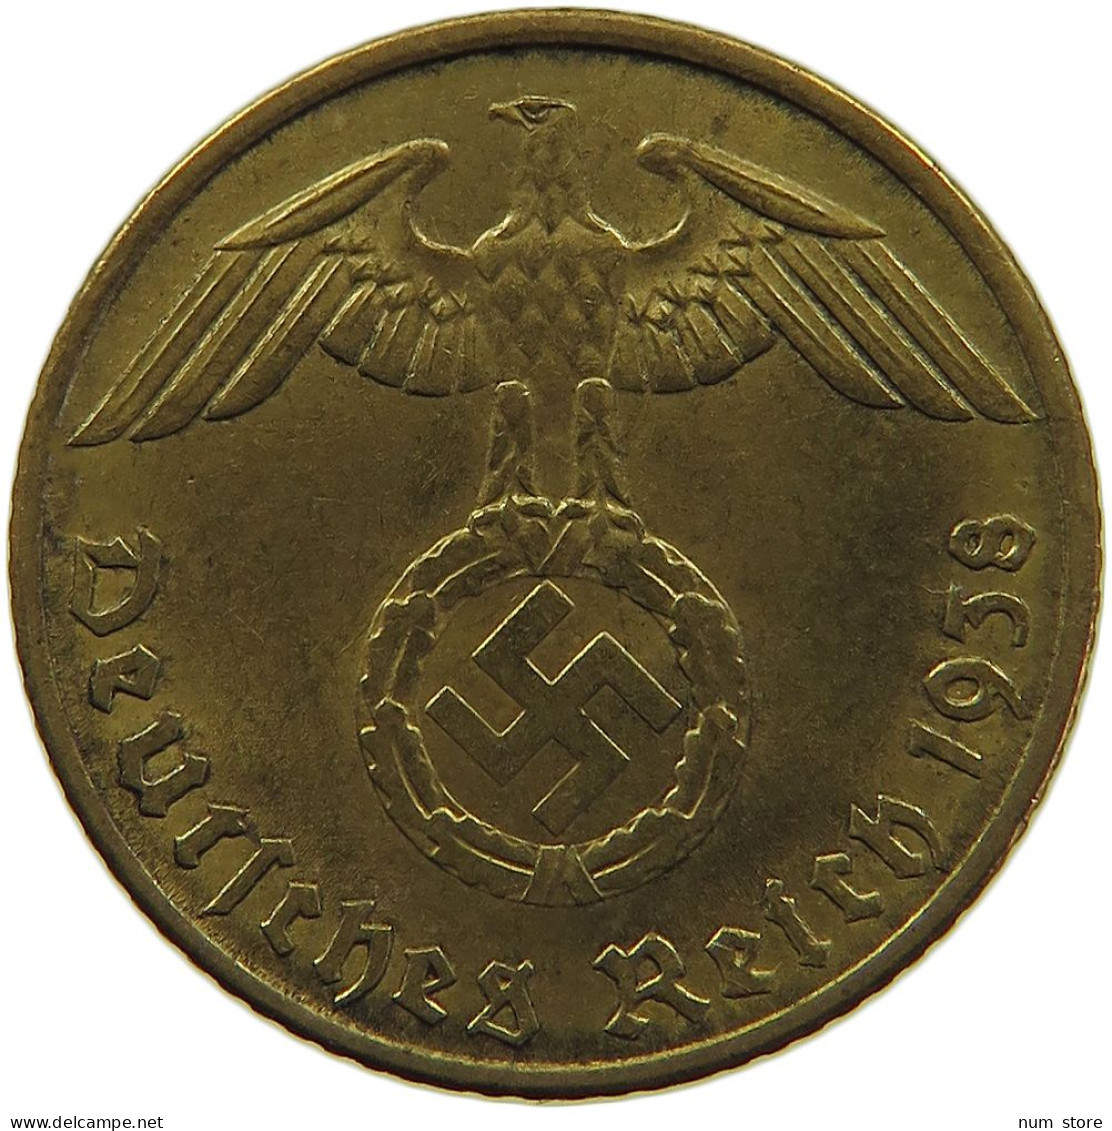 GERMANY 5 REICHSPFENNIG 1938 A #s091 0615 - 5 Reichspfennig